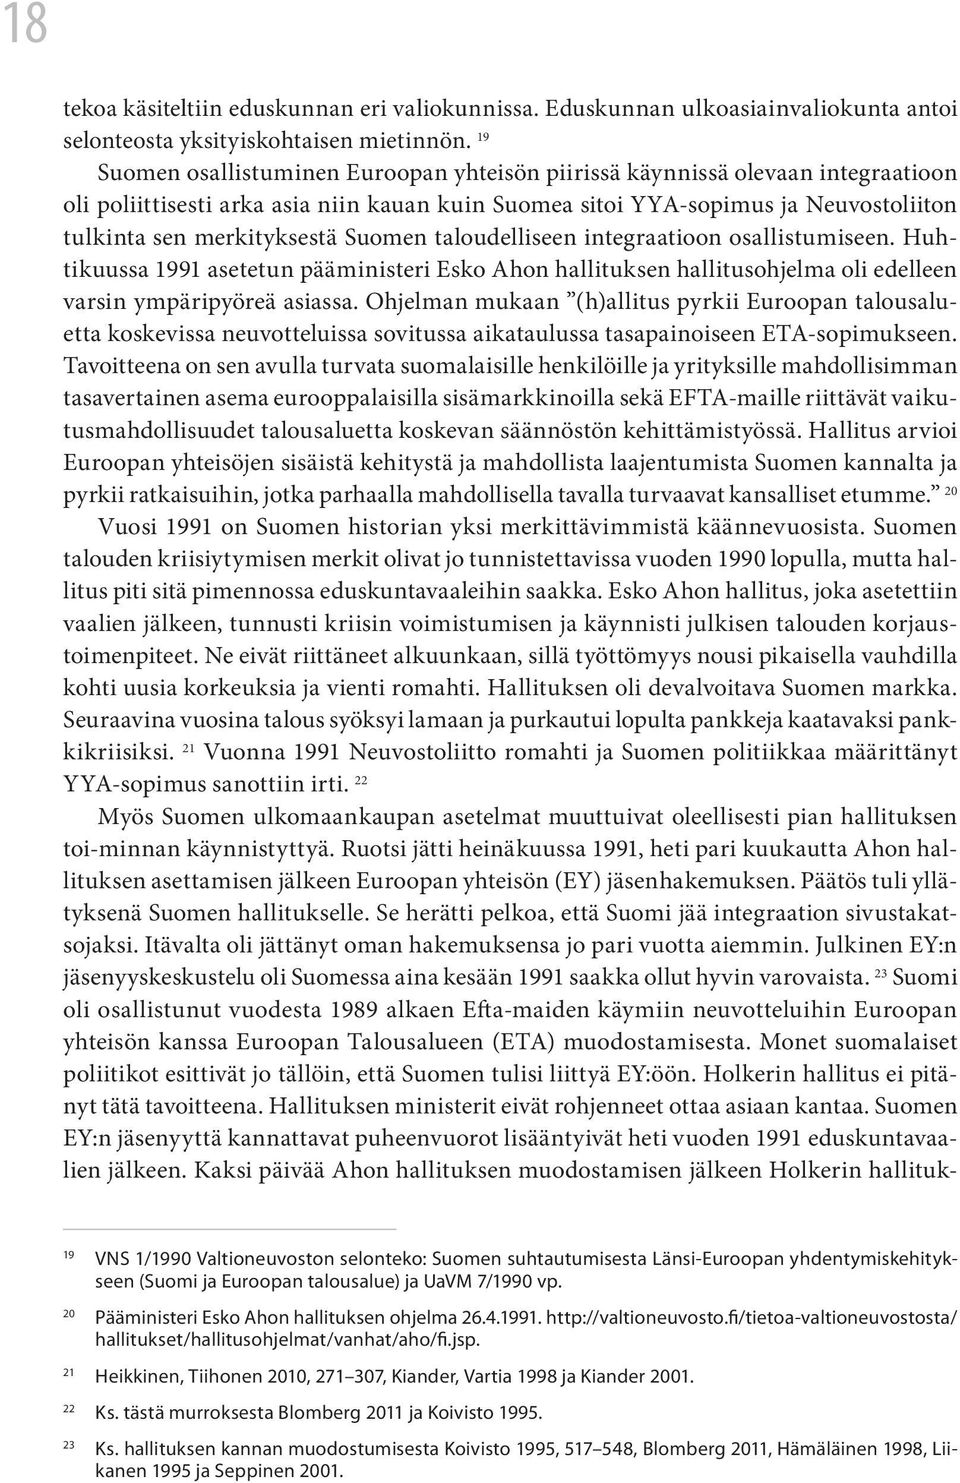 Suomen taloudelliseen integraatioon osallistumiseen. Huhtikuussa 1991 asetetun pääministeri Esko Ahon hallituksen hallitusohjelma oli edelleen varsin ympäripyöreä asiassa.